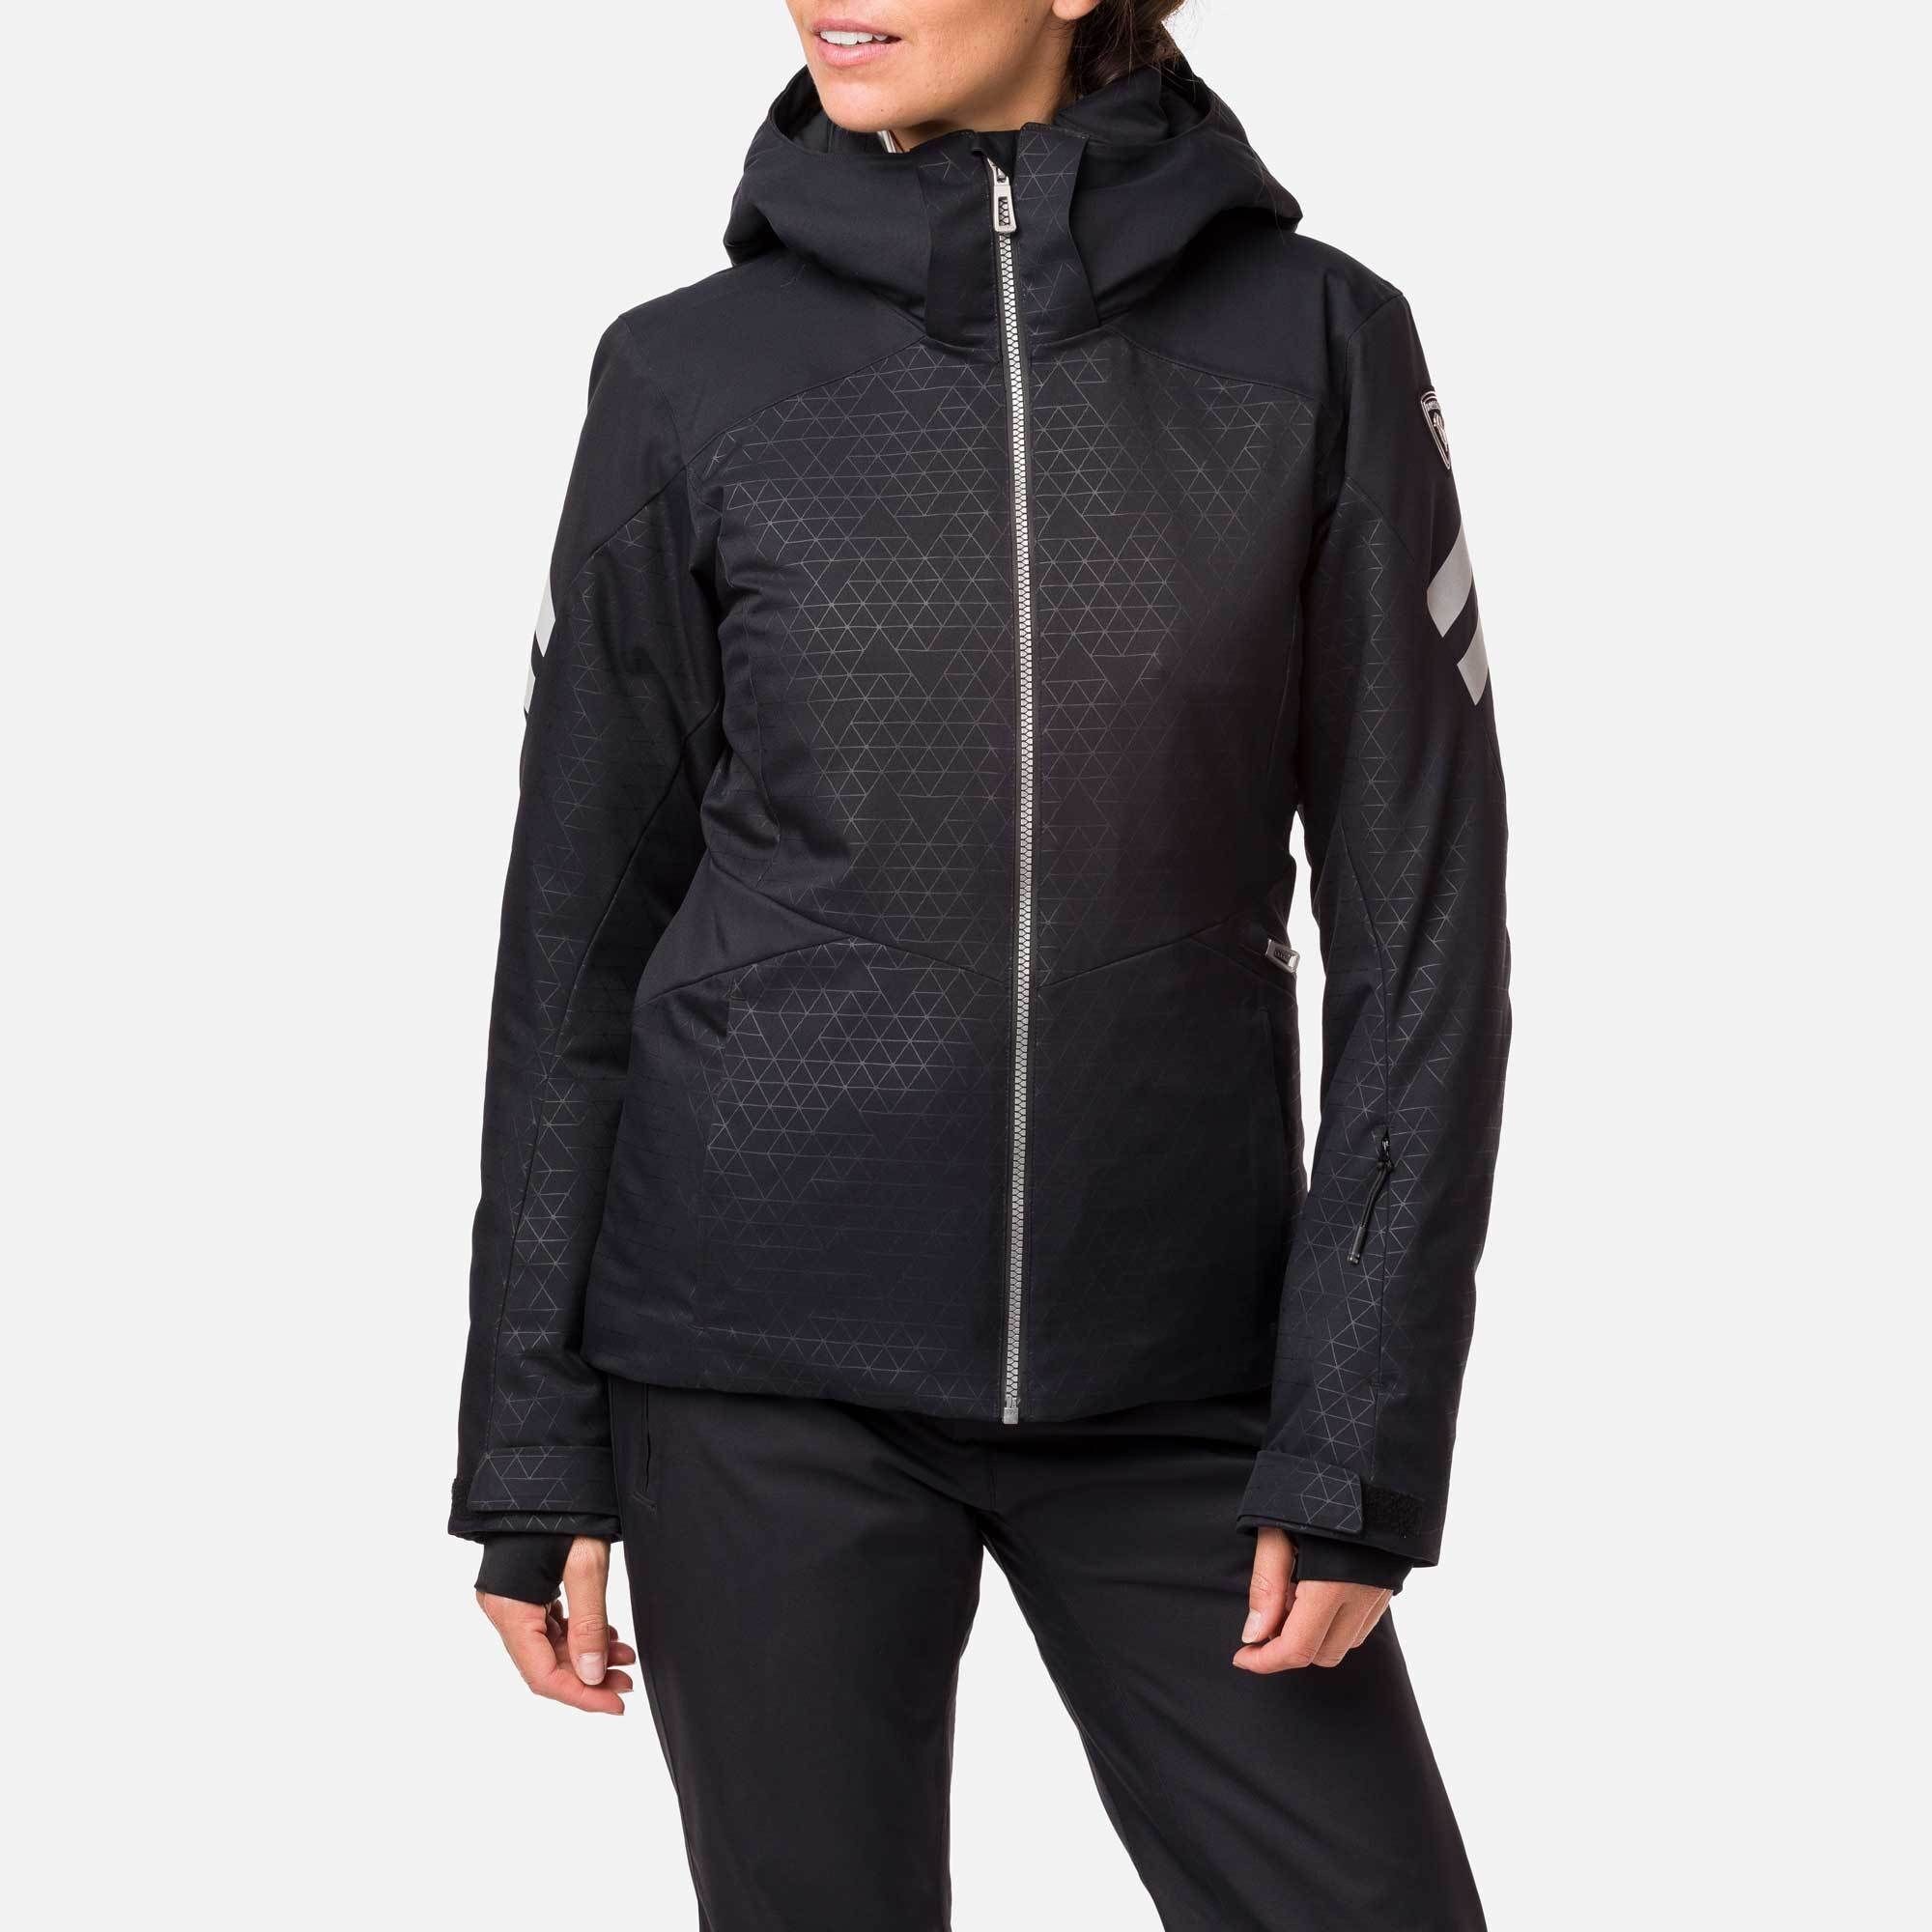 Rossignol Controle Jacket - Chaqueta de esquí - Mujer